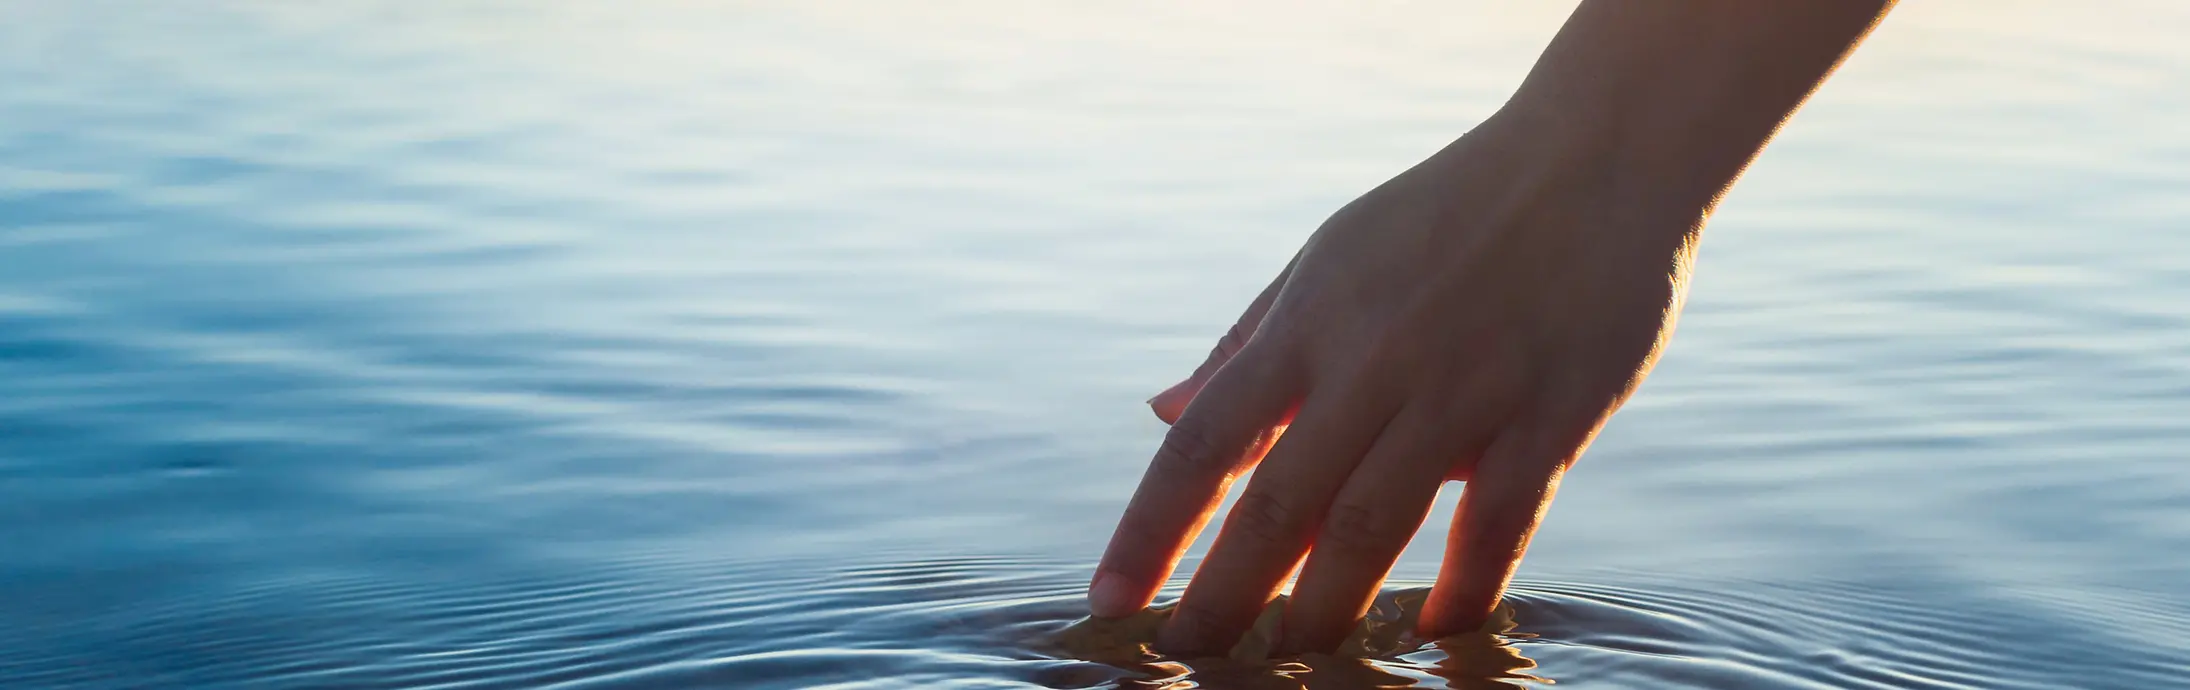 Een hand strijkt door een kalm wateroppervlak voor de horizon